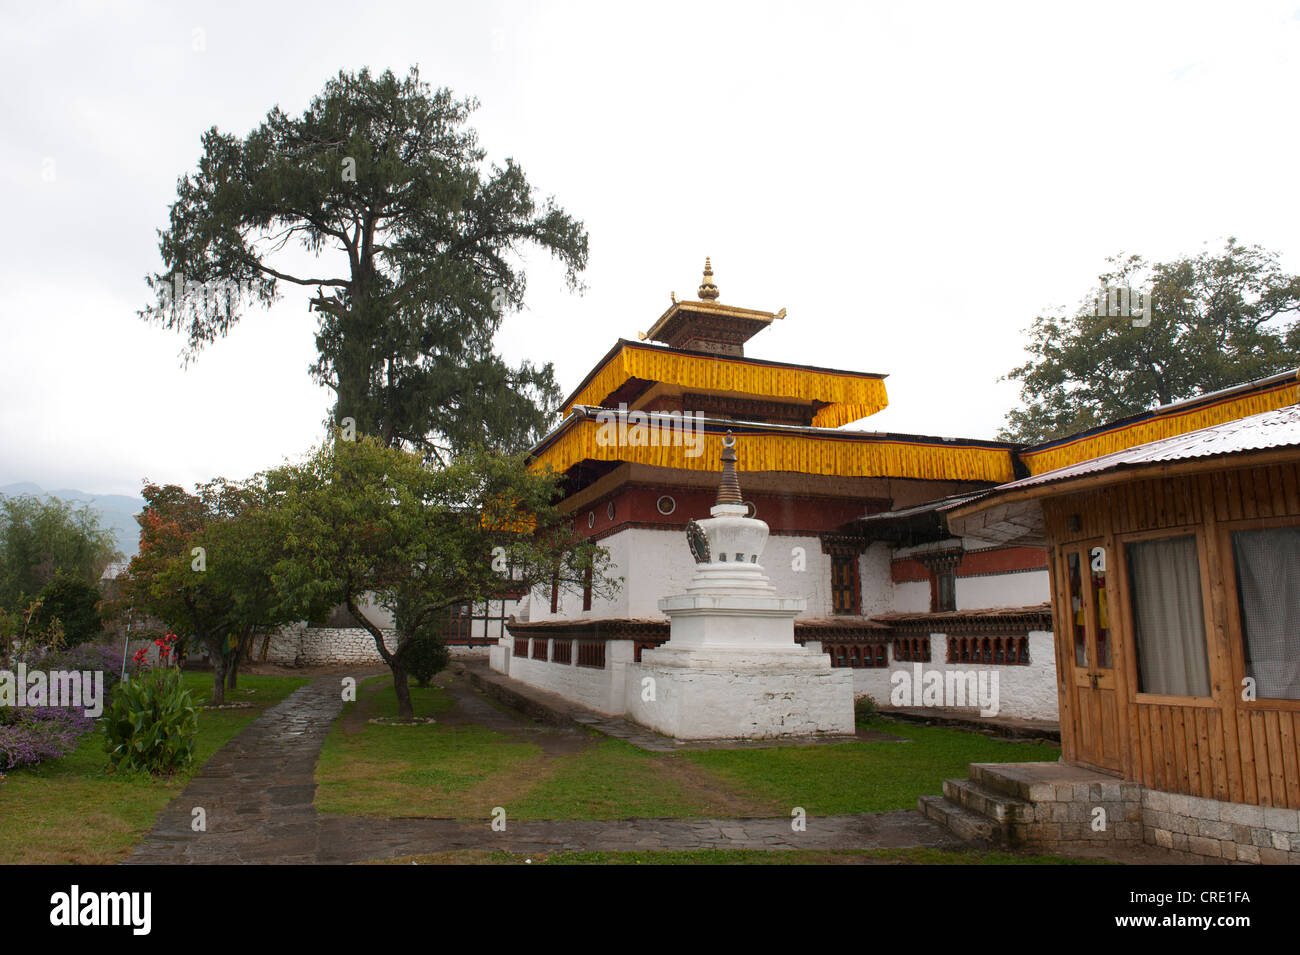 Le bouddhisme tibétain, Kyichu Lhakhang temple et d'un petit stupa et un grand arbre, près de Paro, l'Himalaya, le Bhoutan, l'Asie du Sud, Asie Banque D'Images